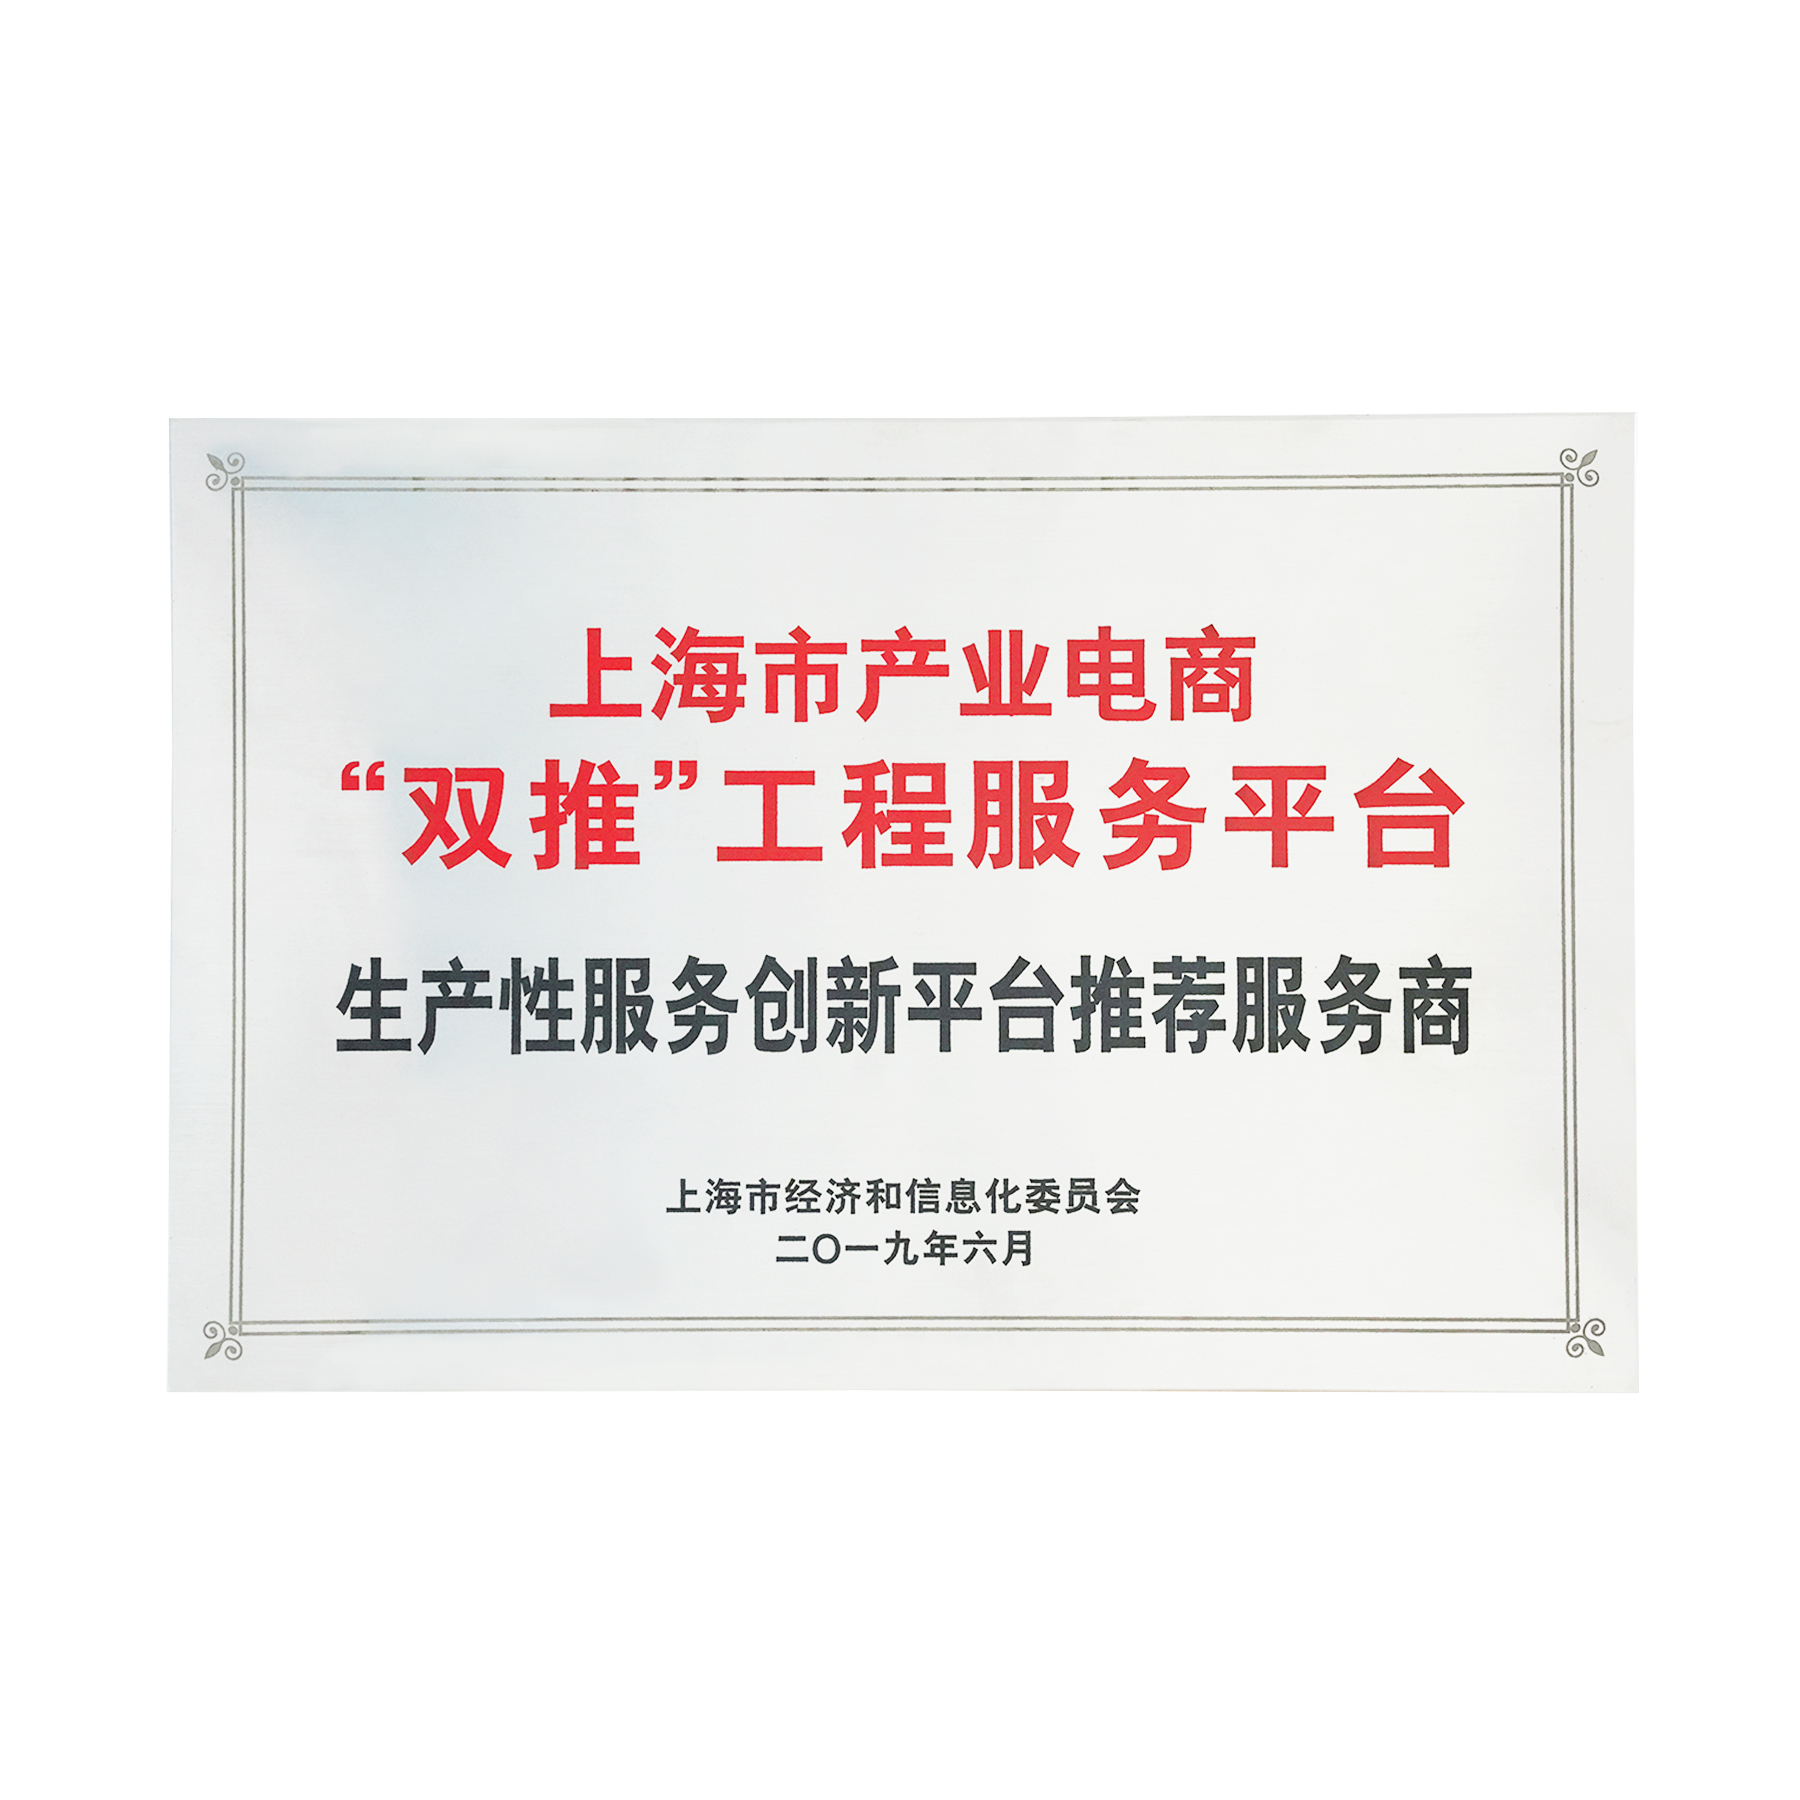 上海市产业电商“双推”工程服务平台企业